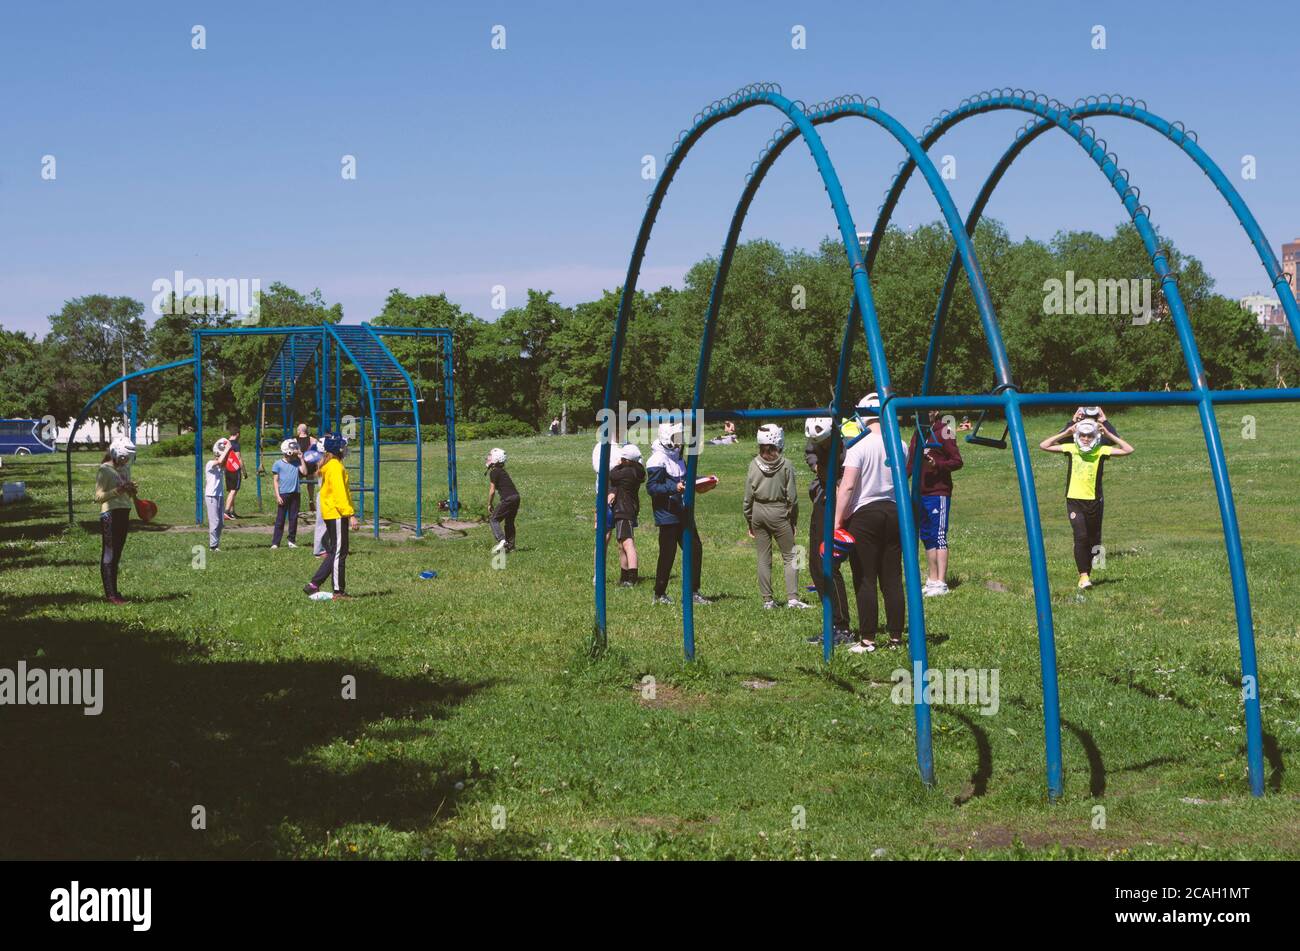 Sankt Petersburg, Russland - 12. Juni 2020: Sportunterricht für Kinder in einem Park in der Nähe von Sportanlagen Stockfoto